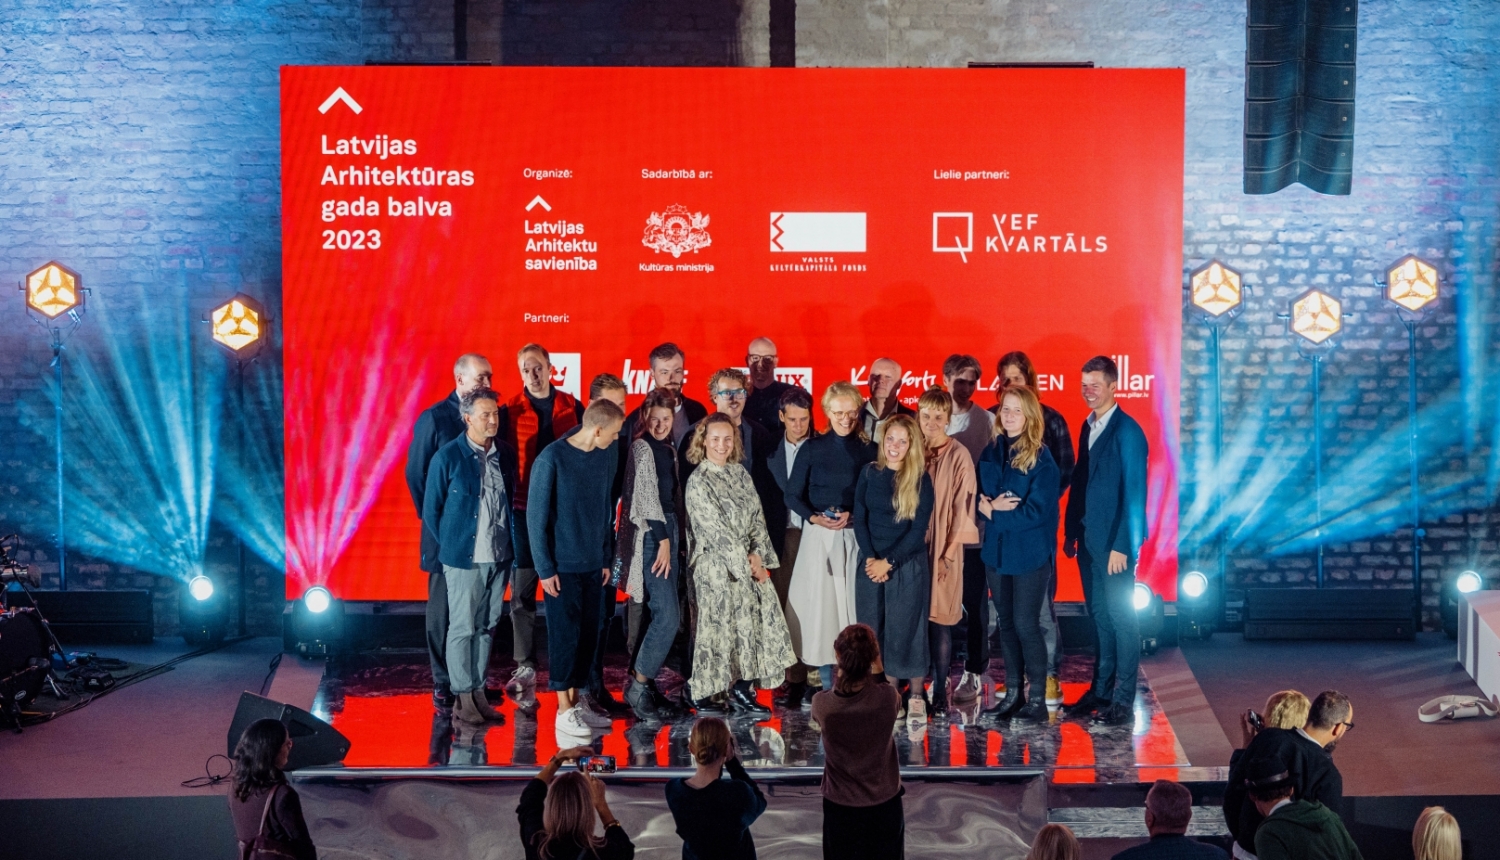 Latvijas Arhitektūras gada balvas 2023 ceremonija